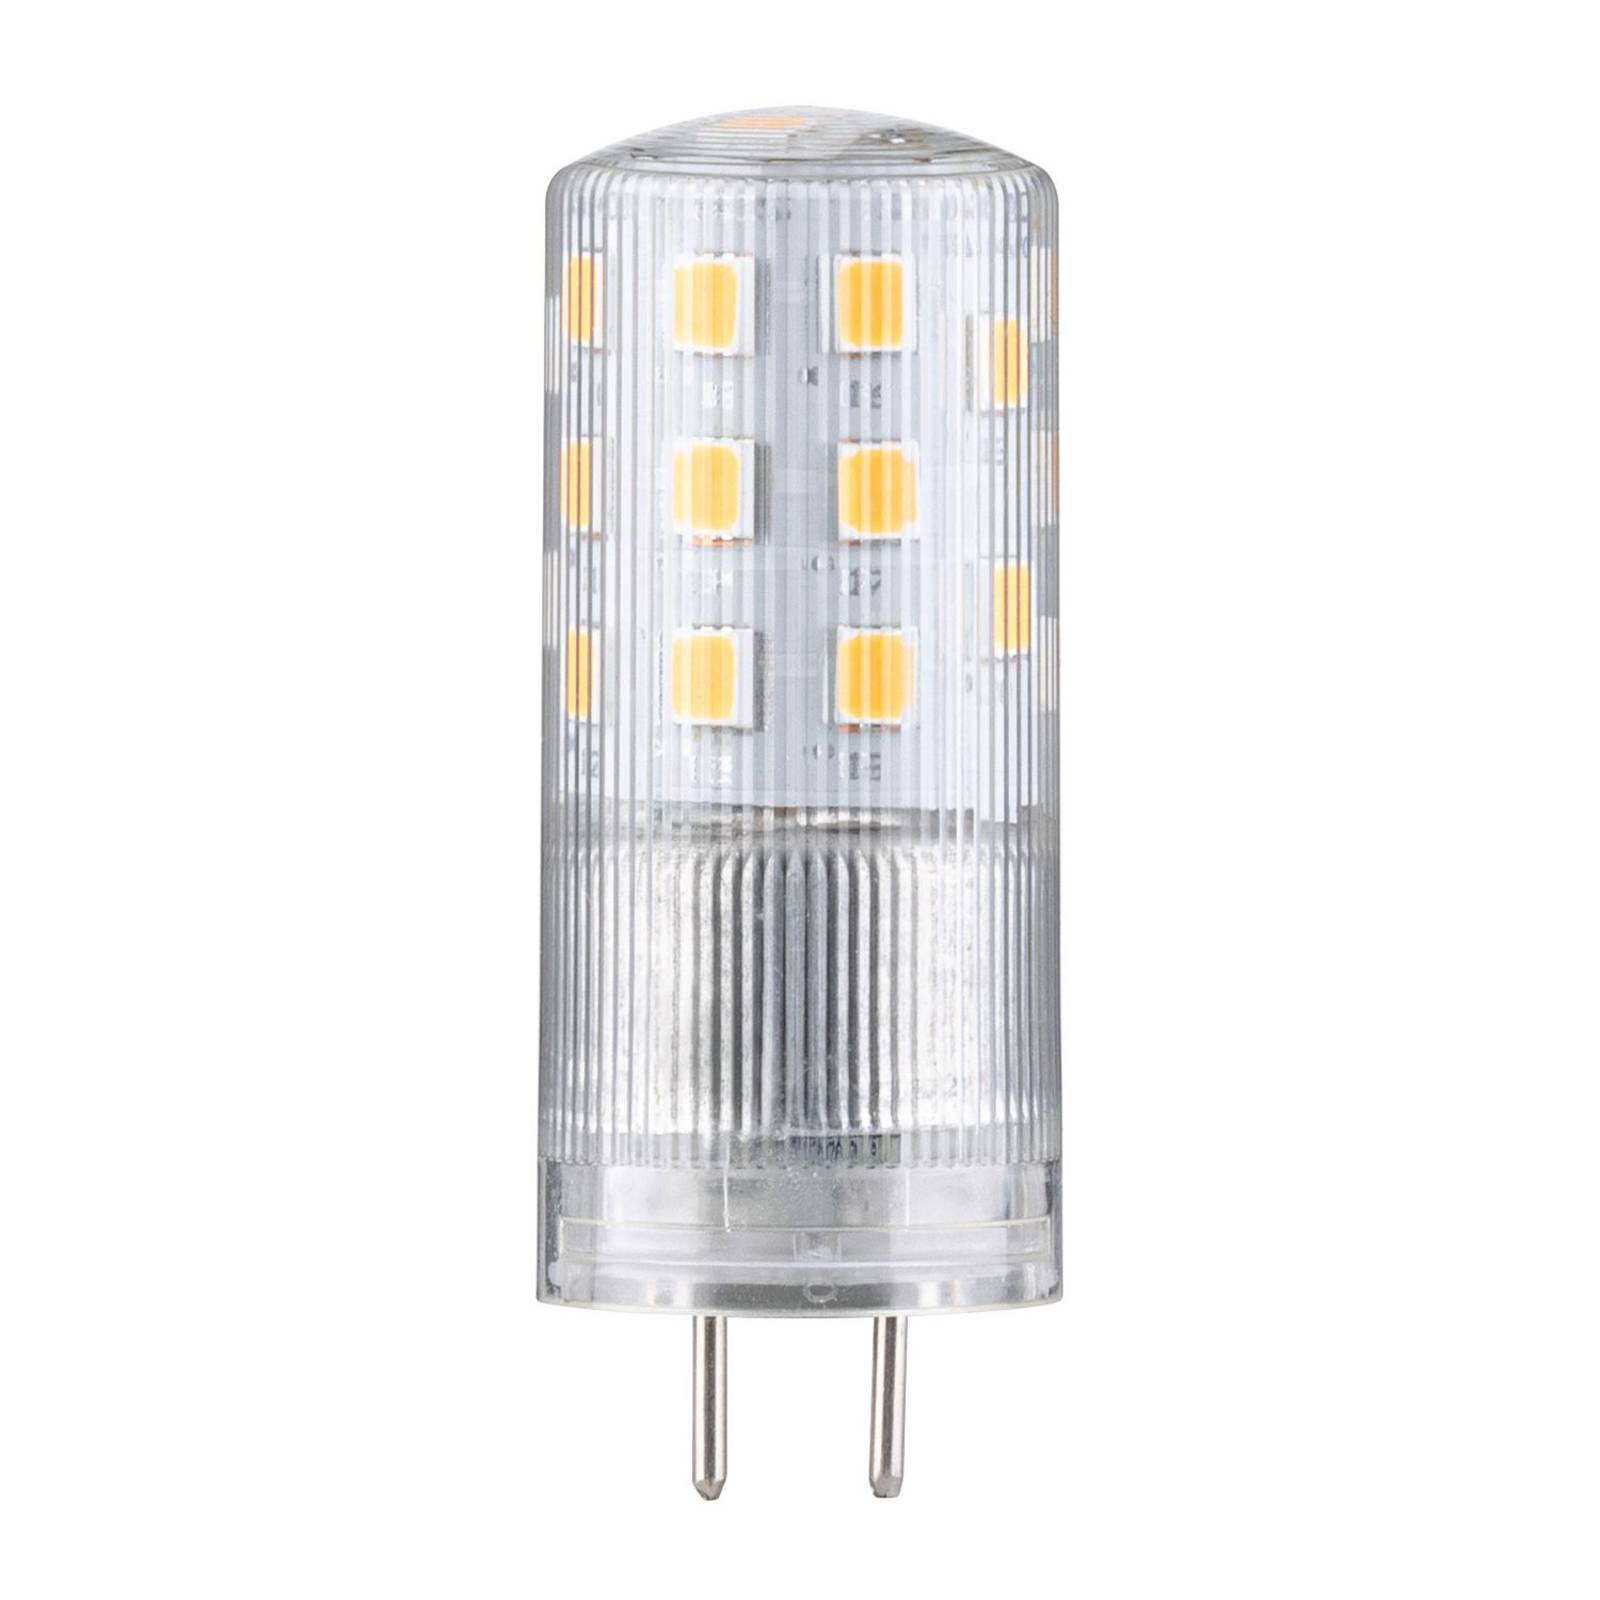 Paulmann GY6.35 4 W bi-pin LED bulb 2,700 K